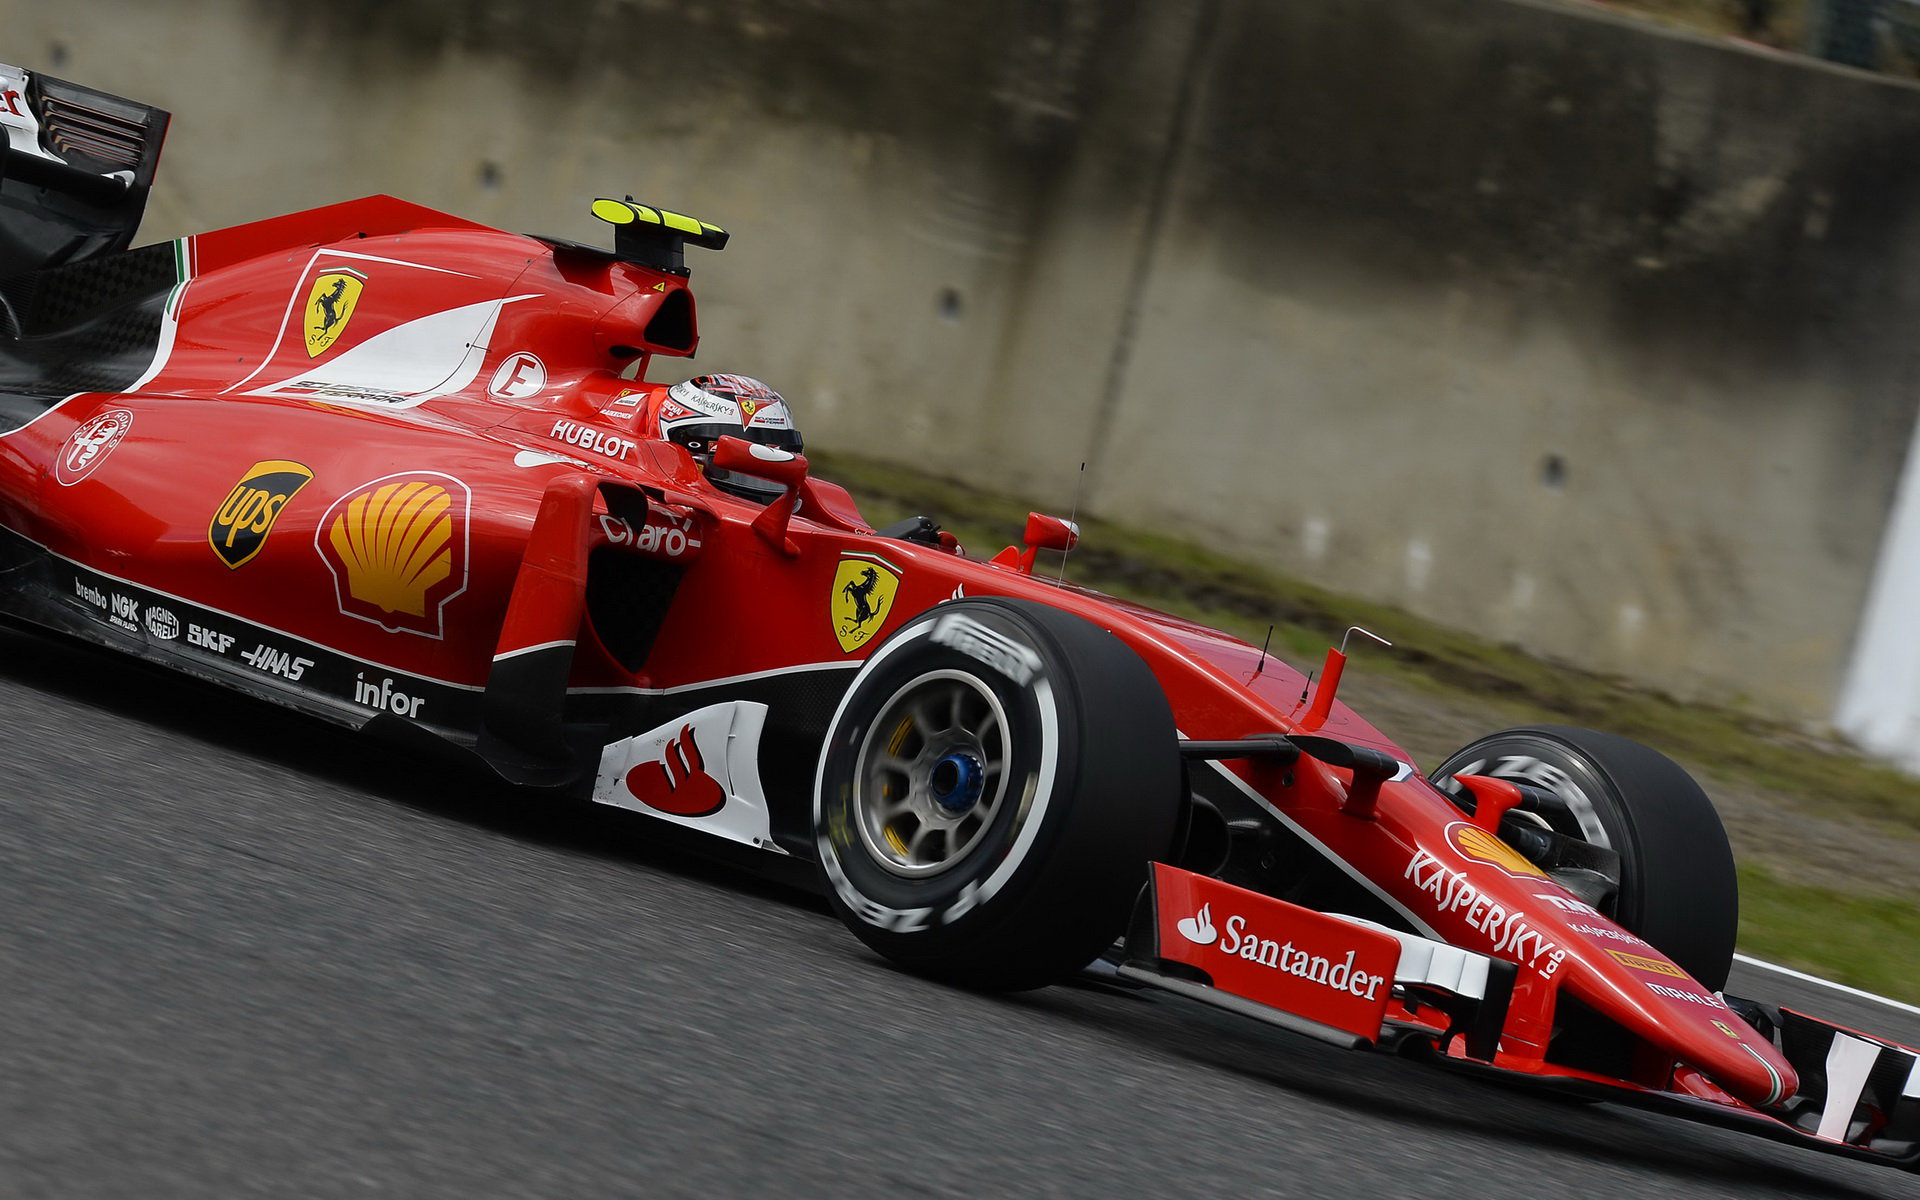 Kimi Räikkönen, GP Japonska (Suzuka)